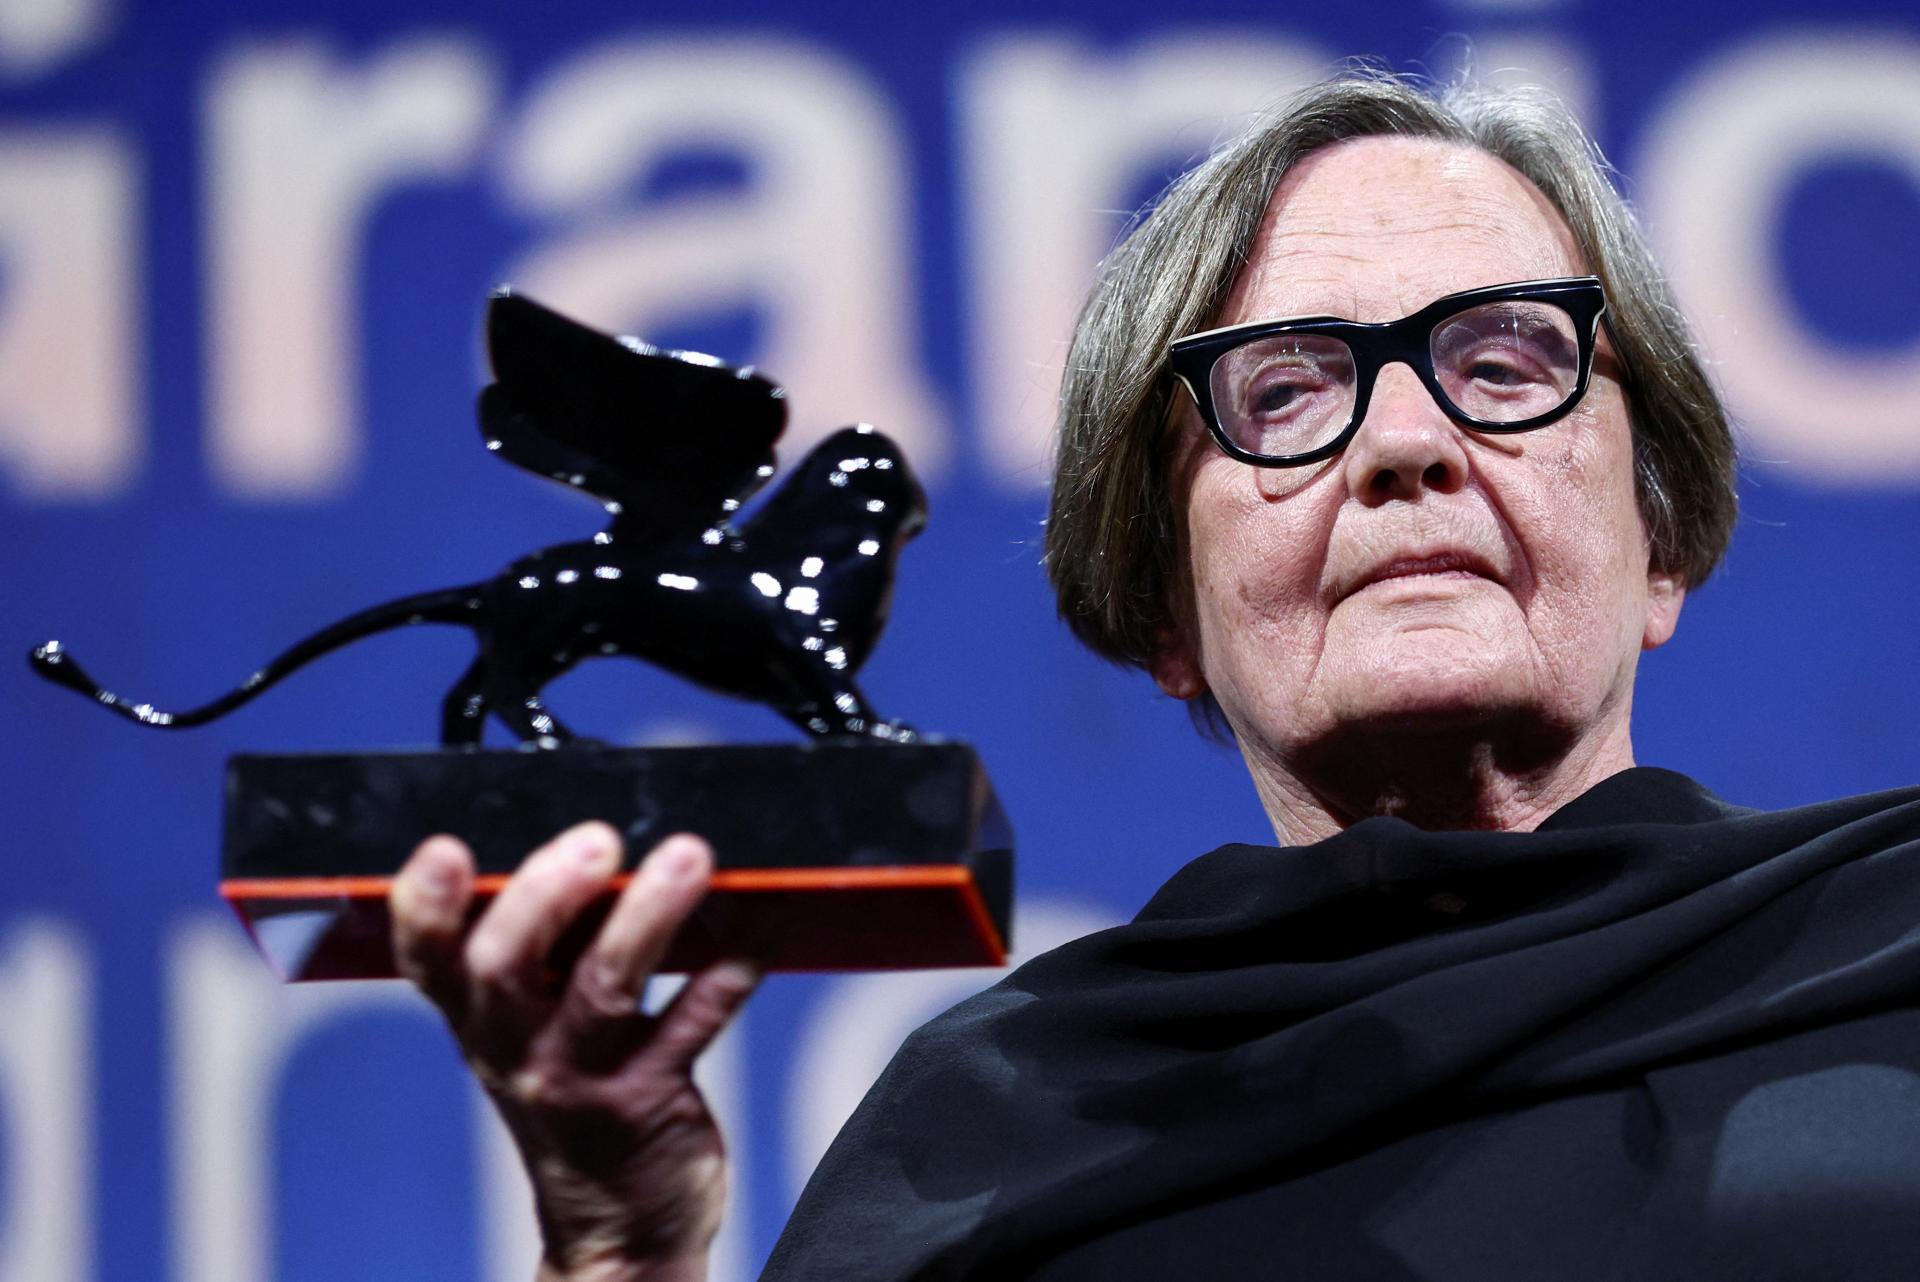 Polska reżyserka Hollandová zdobyła nagrodę specjalną jury w Wenecji za film Hranica